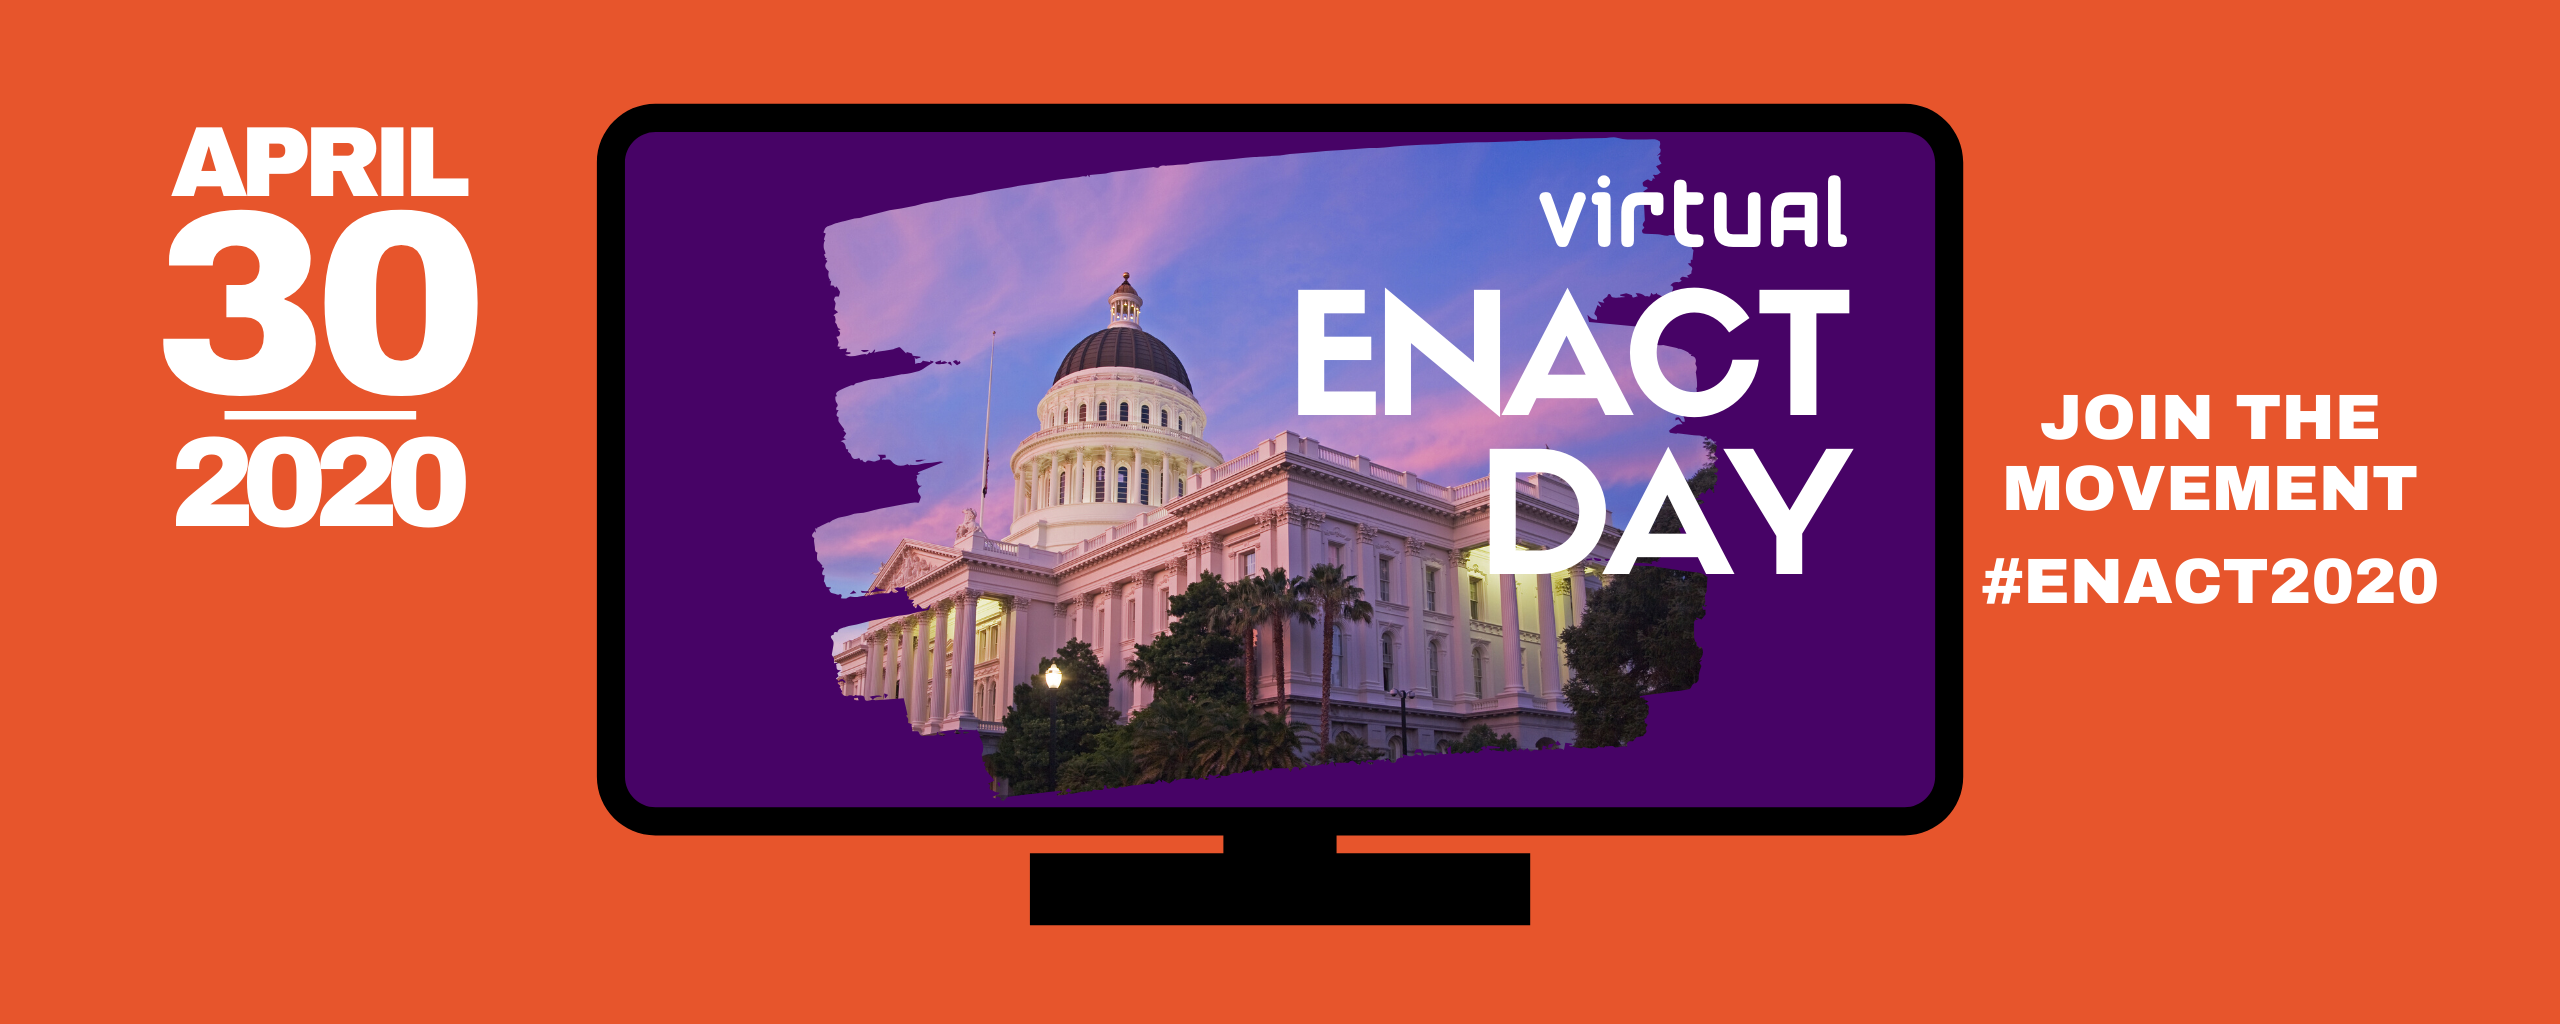 April 30 - Virtual ENACT Day